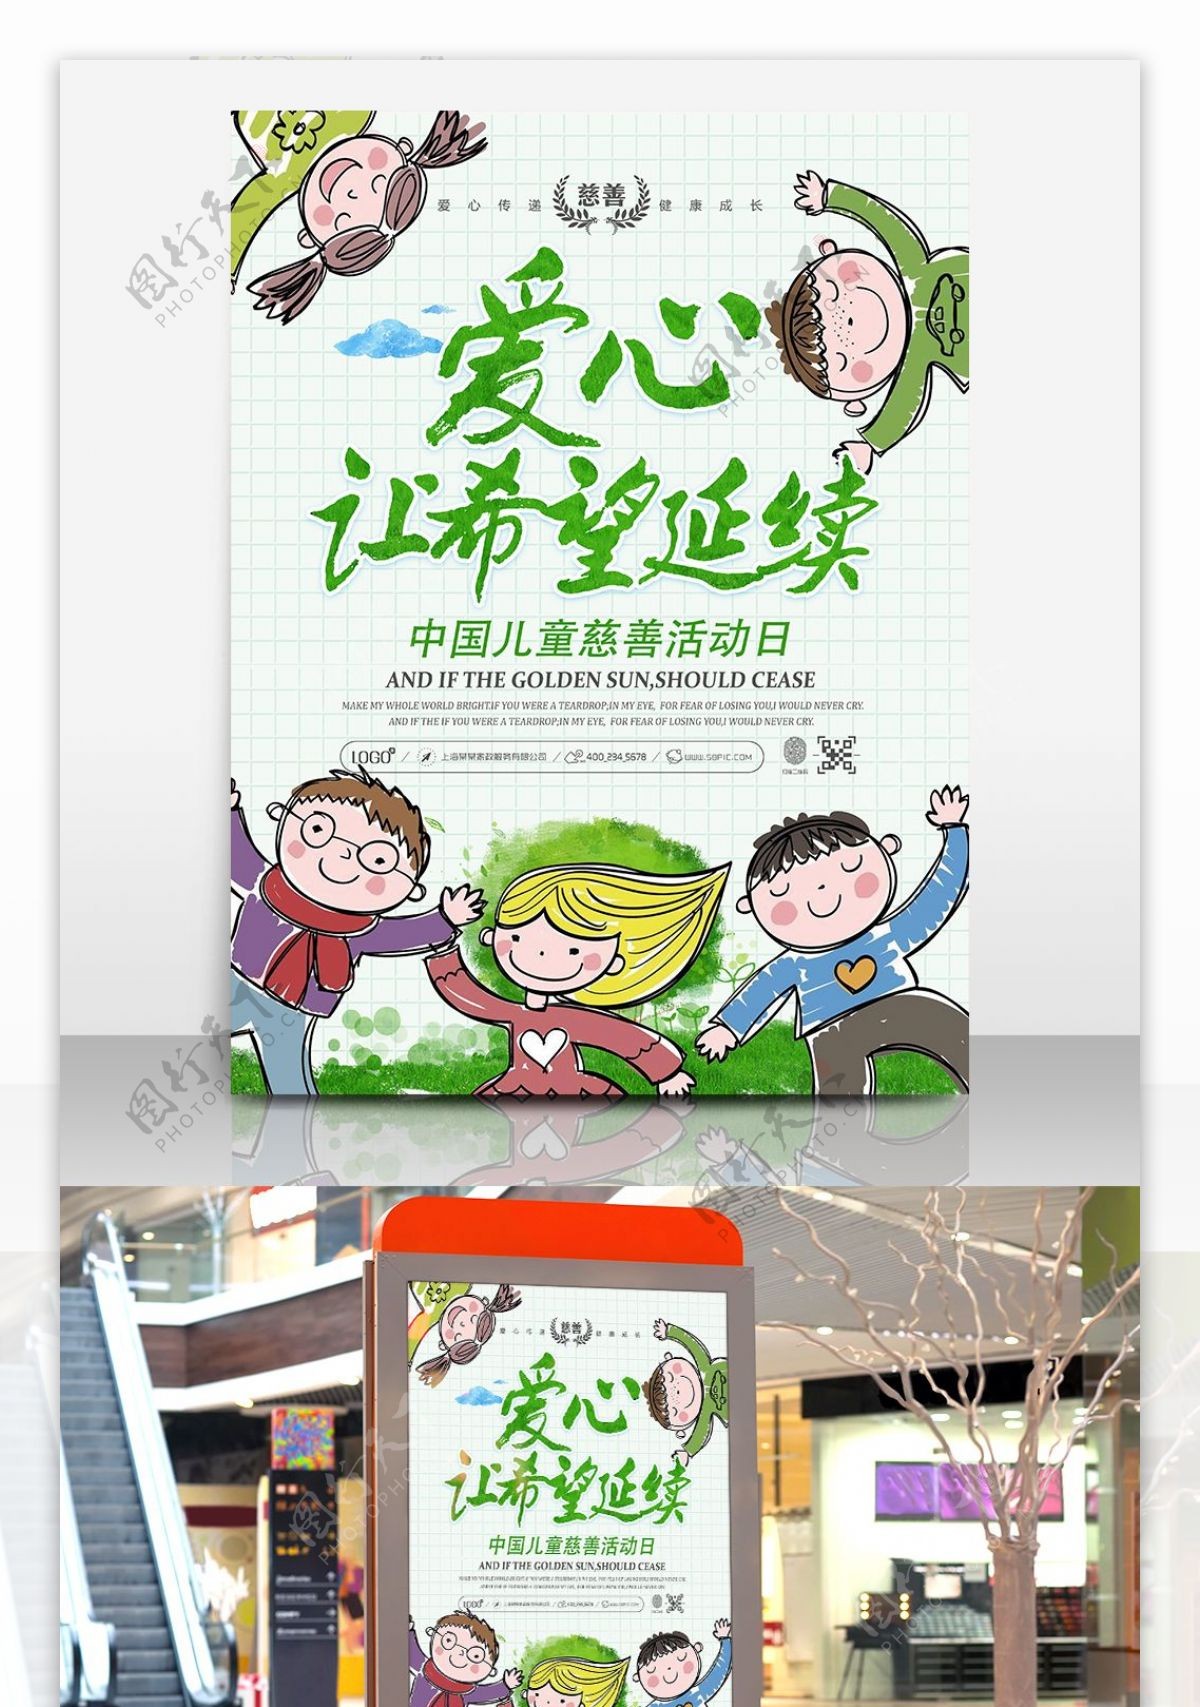 中国儿童慈善活动日活动海报